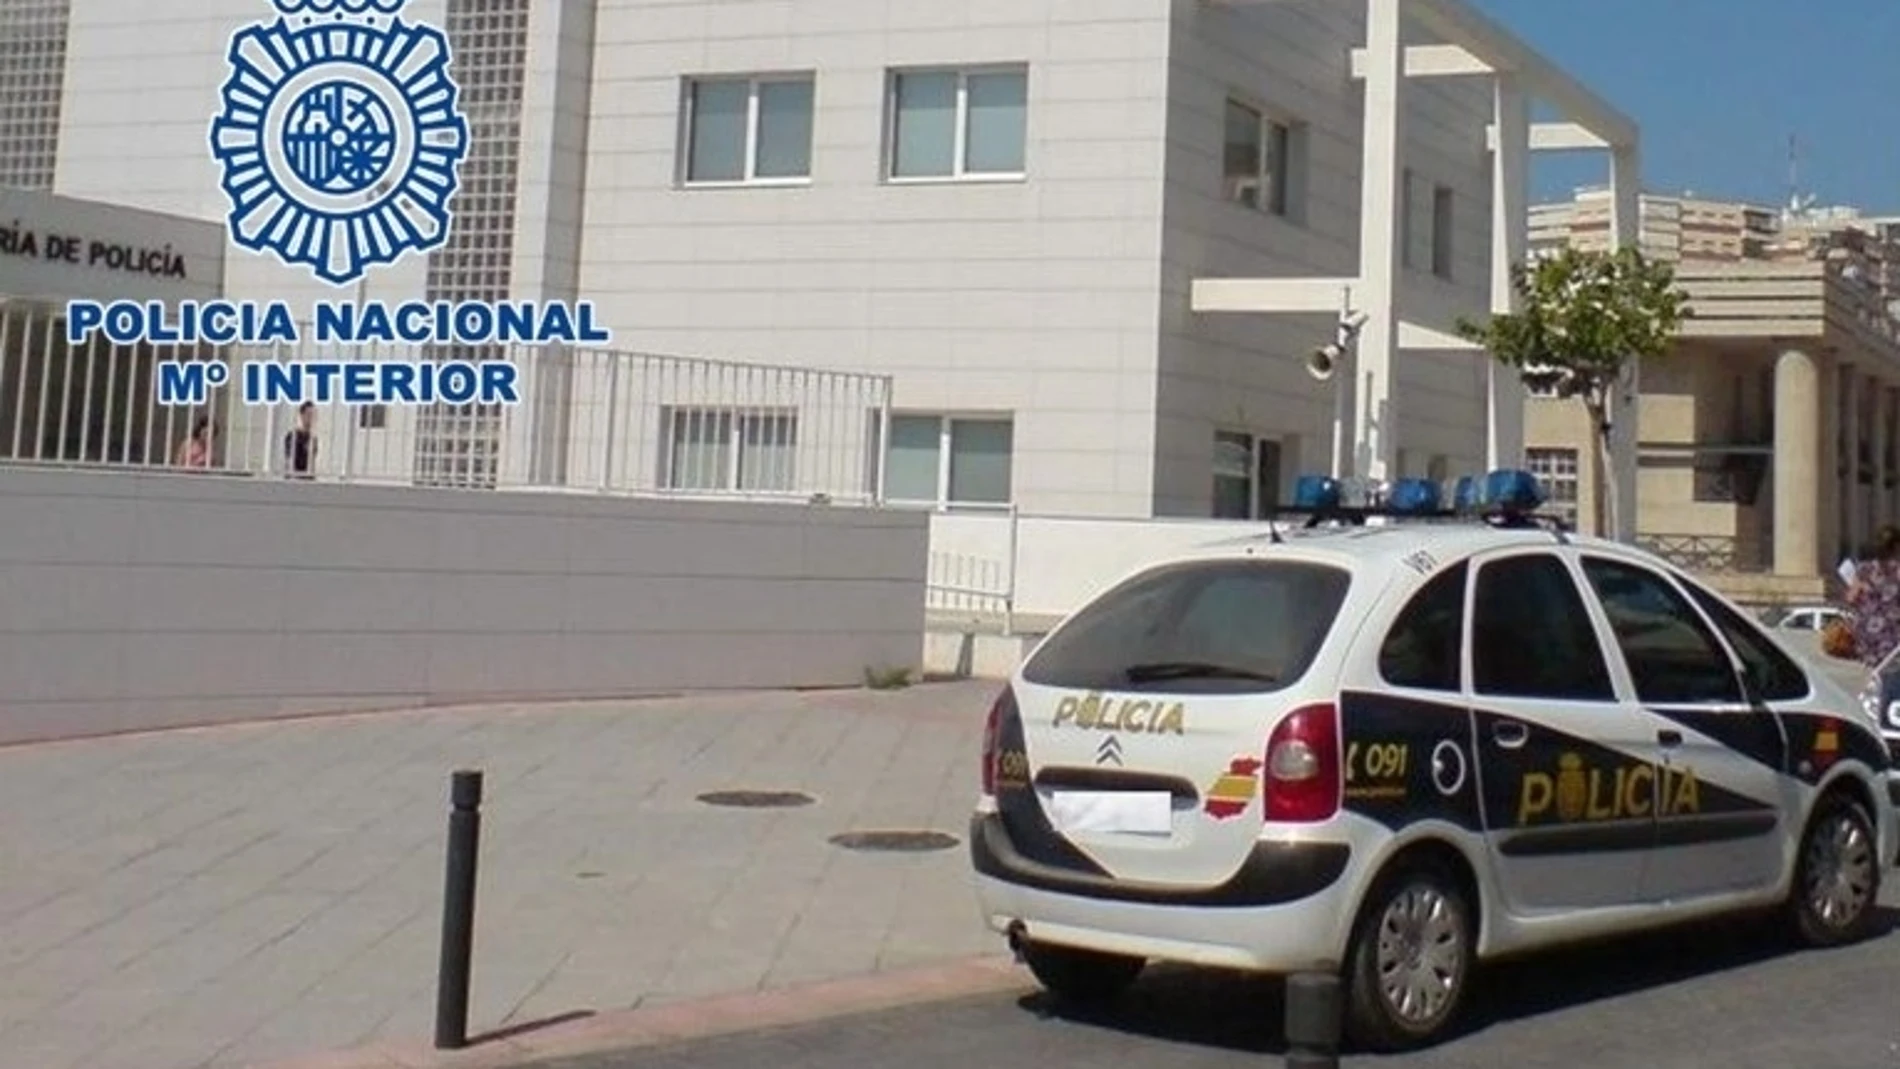 Comisaría de Policía Nacional de Motril (Granada)